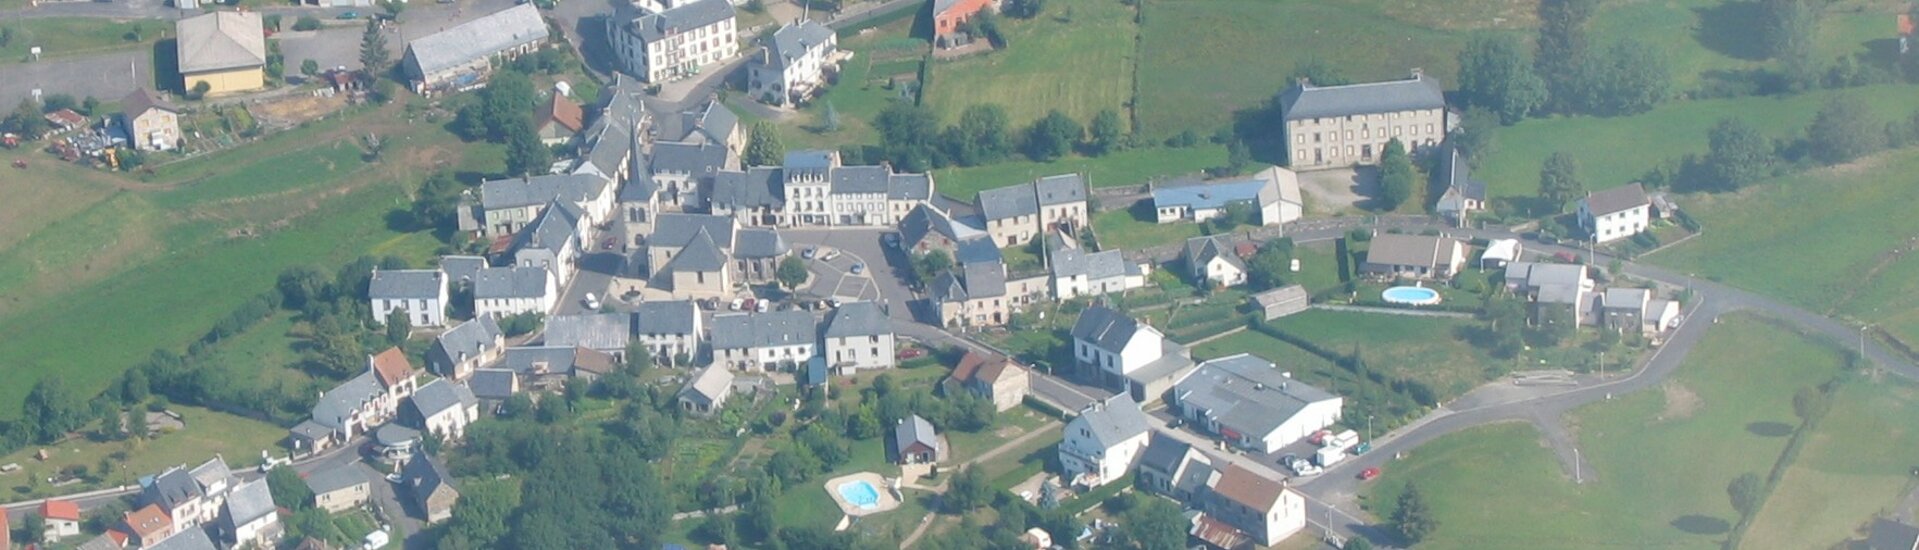 Recensement Bagnolais Commune Mairie Puy-de-Dôme